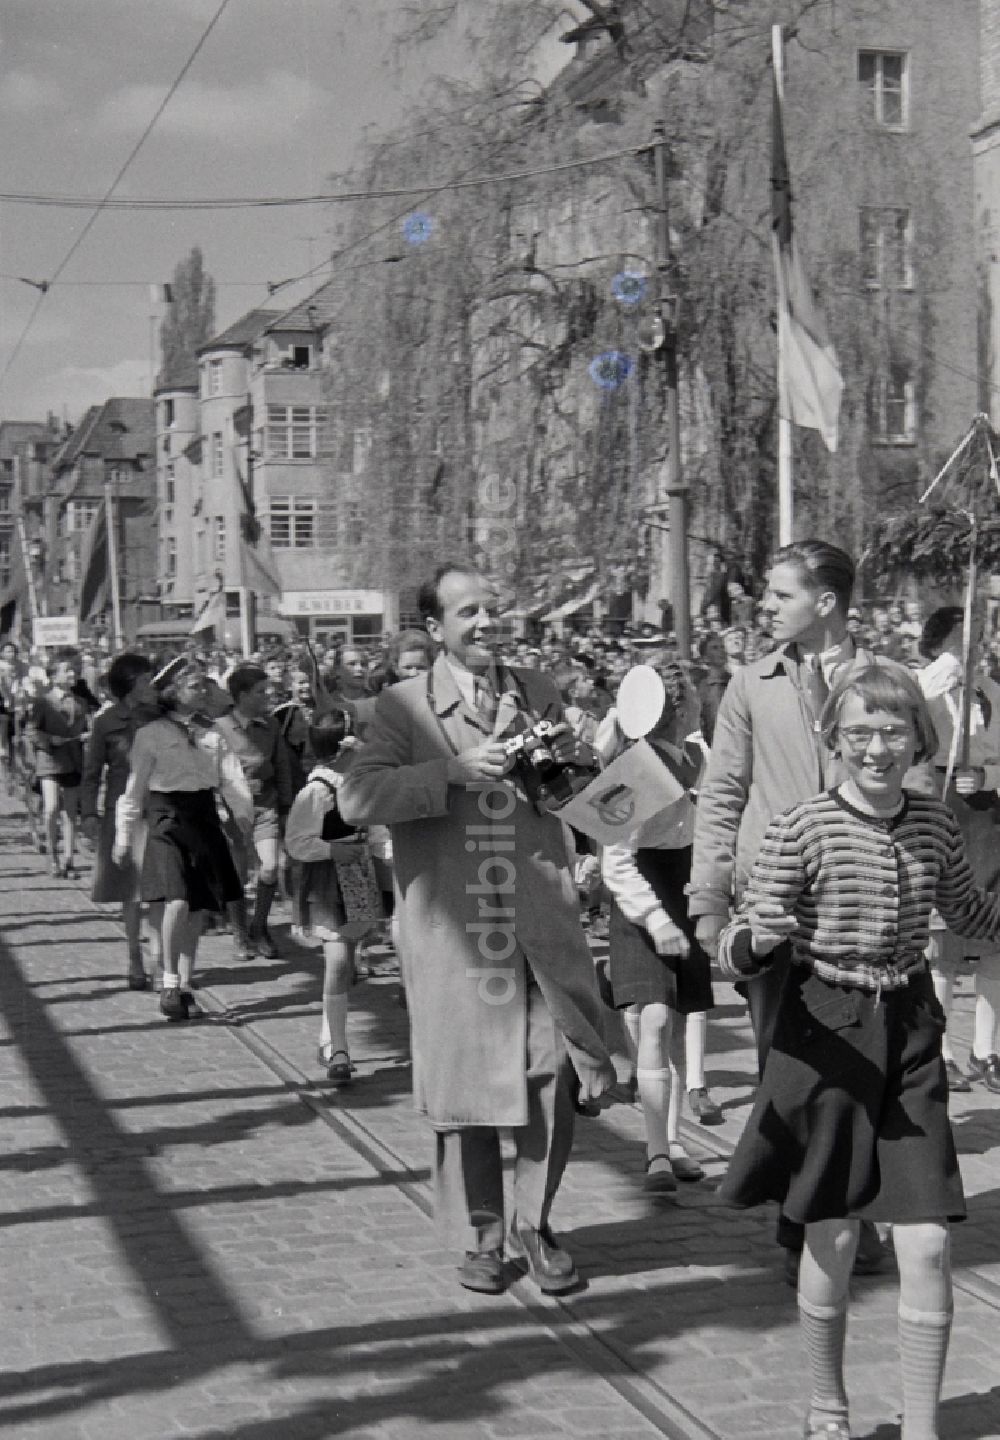 Halberstadt: Teilnehmer des Umzuges zum 1. Mai auf den Straßen in Halberstadt in Sachsen-Anhalt in der DDR